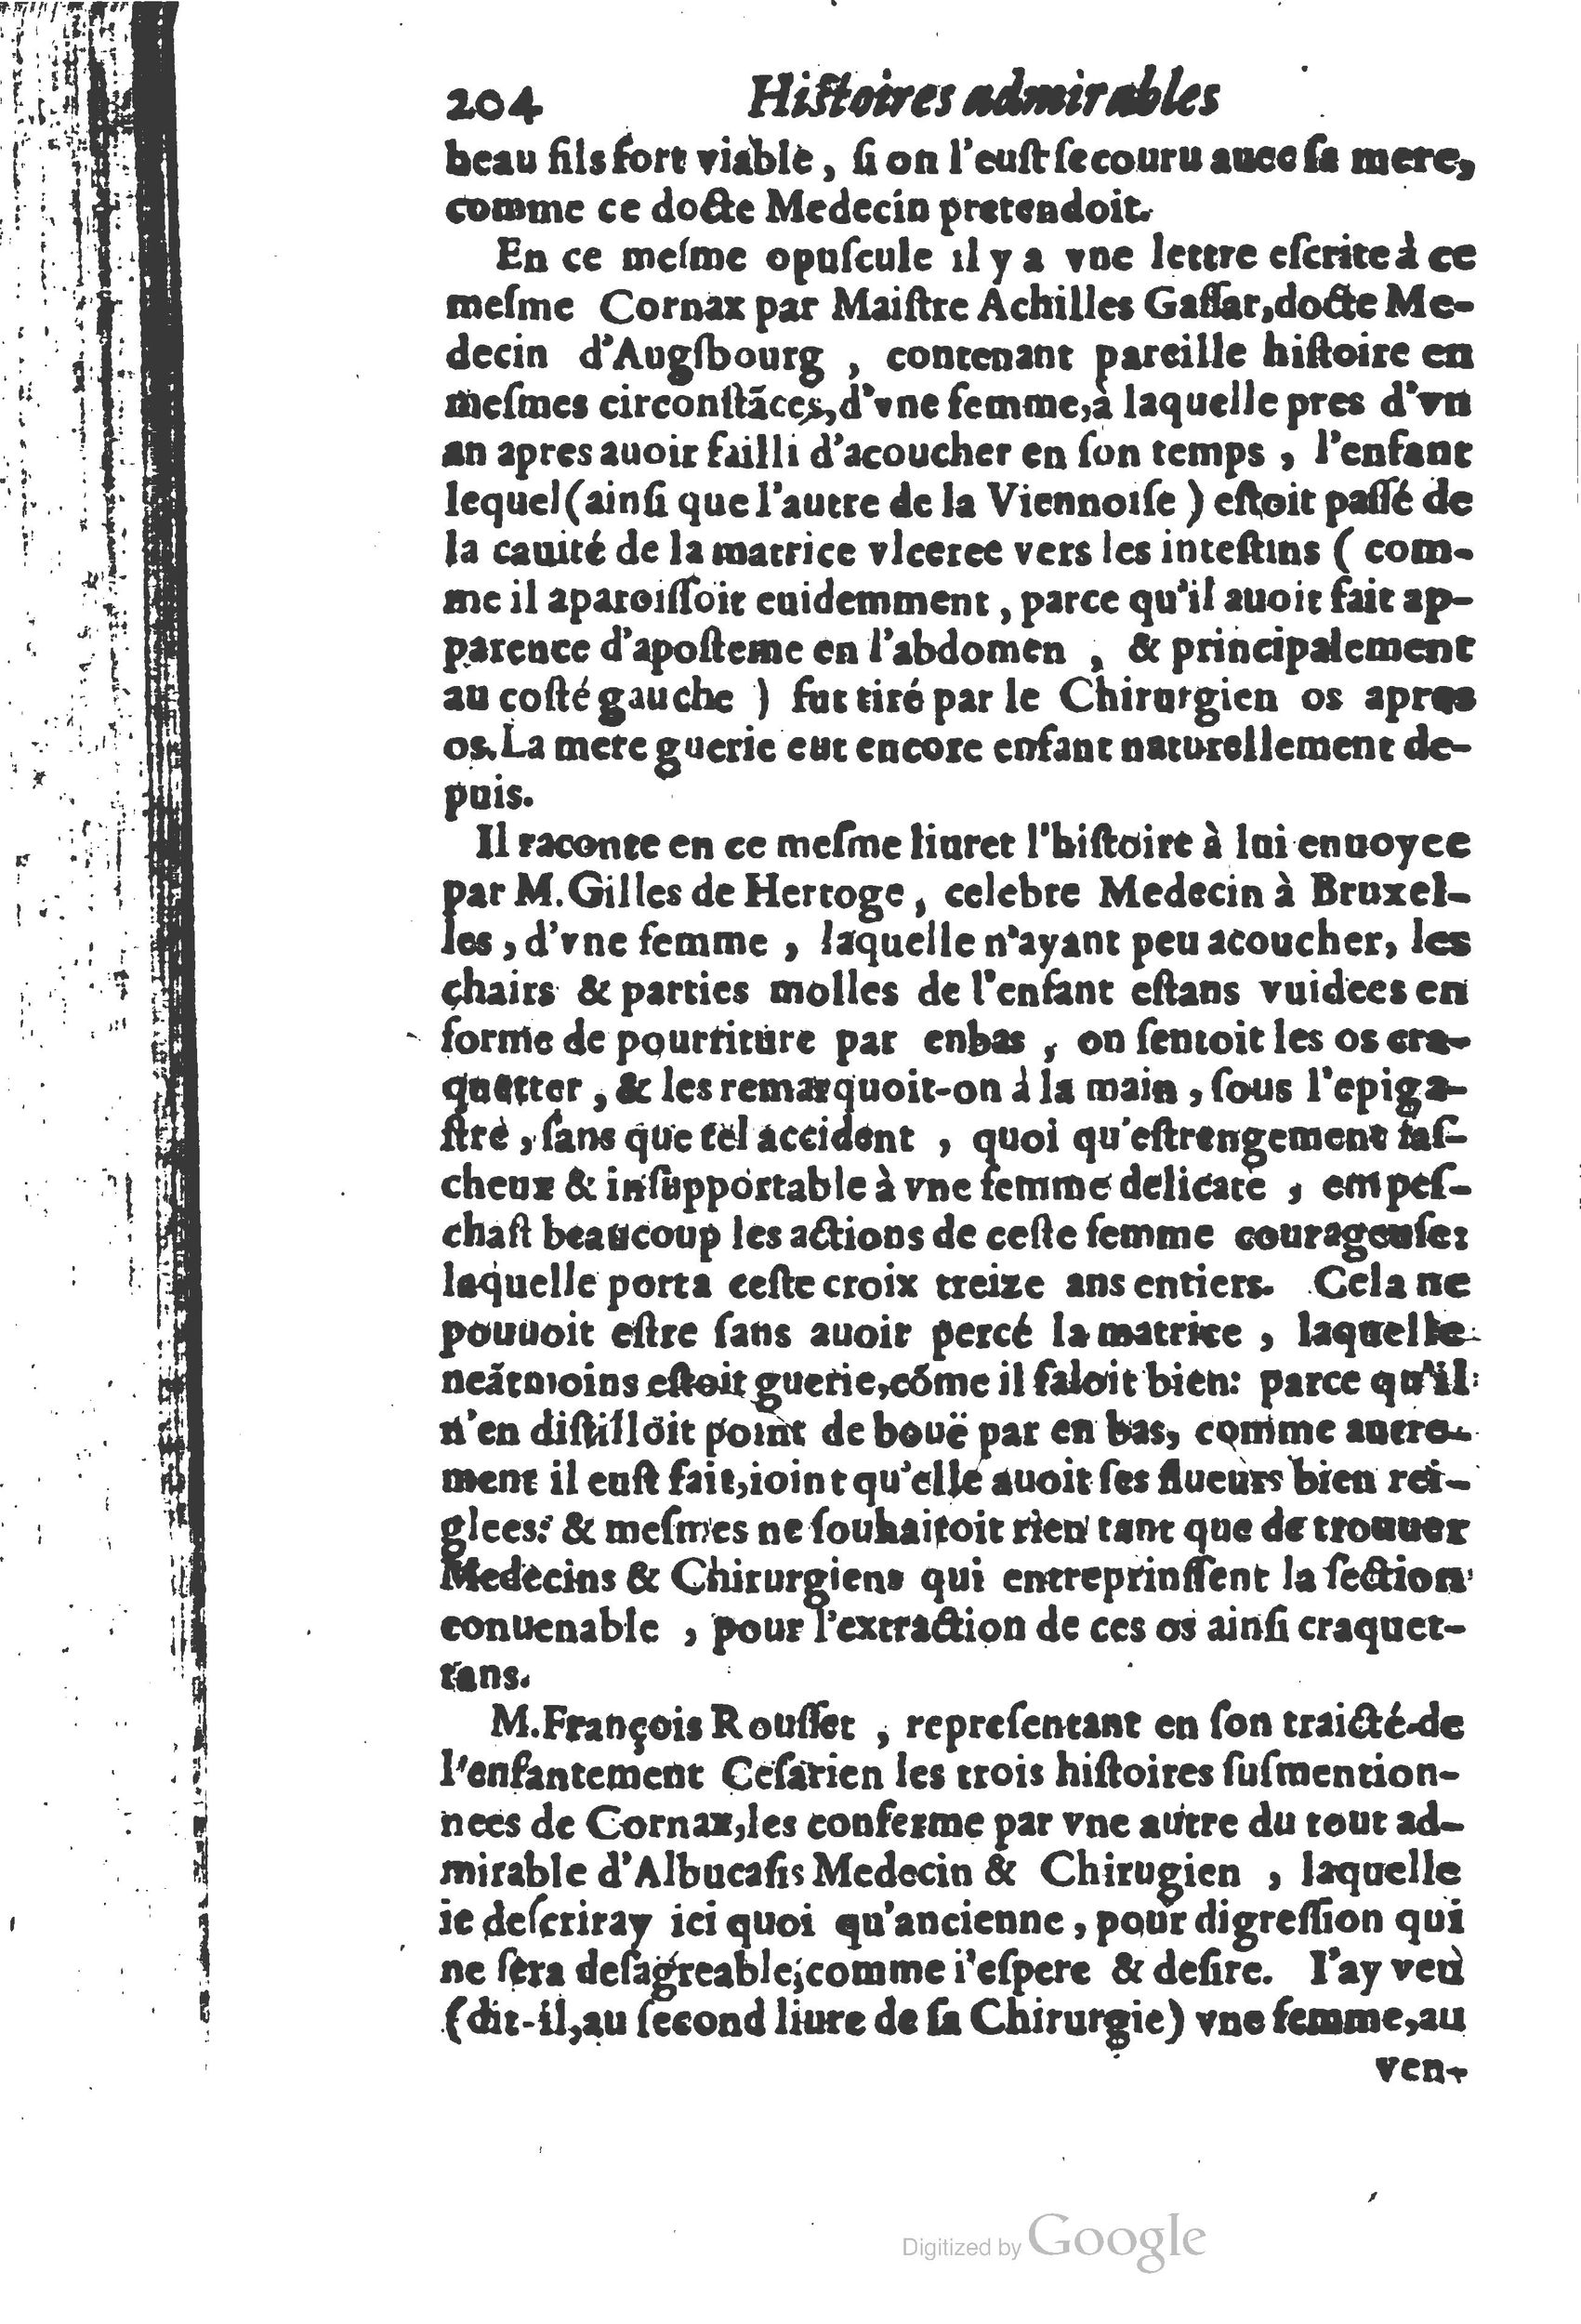 1610 Trésor d’histoires admirables et mémorables de nostre temps Marceau Princeton_Page_0225.jpg